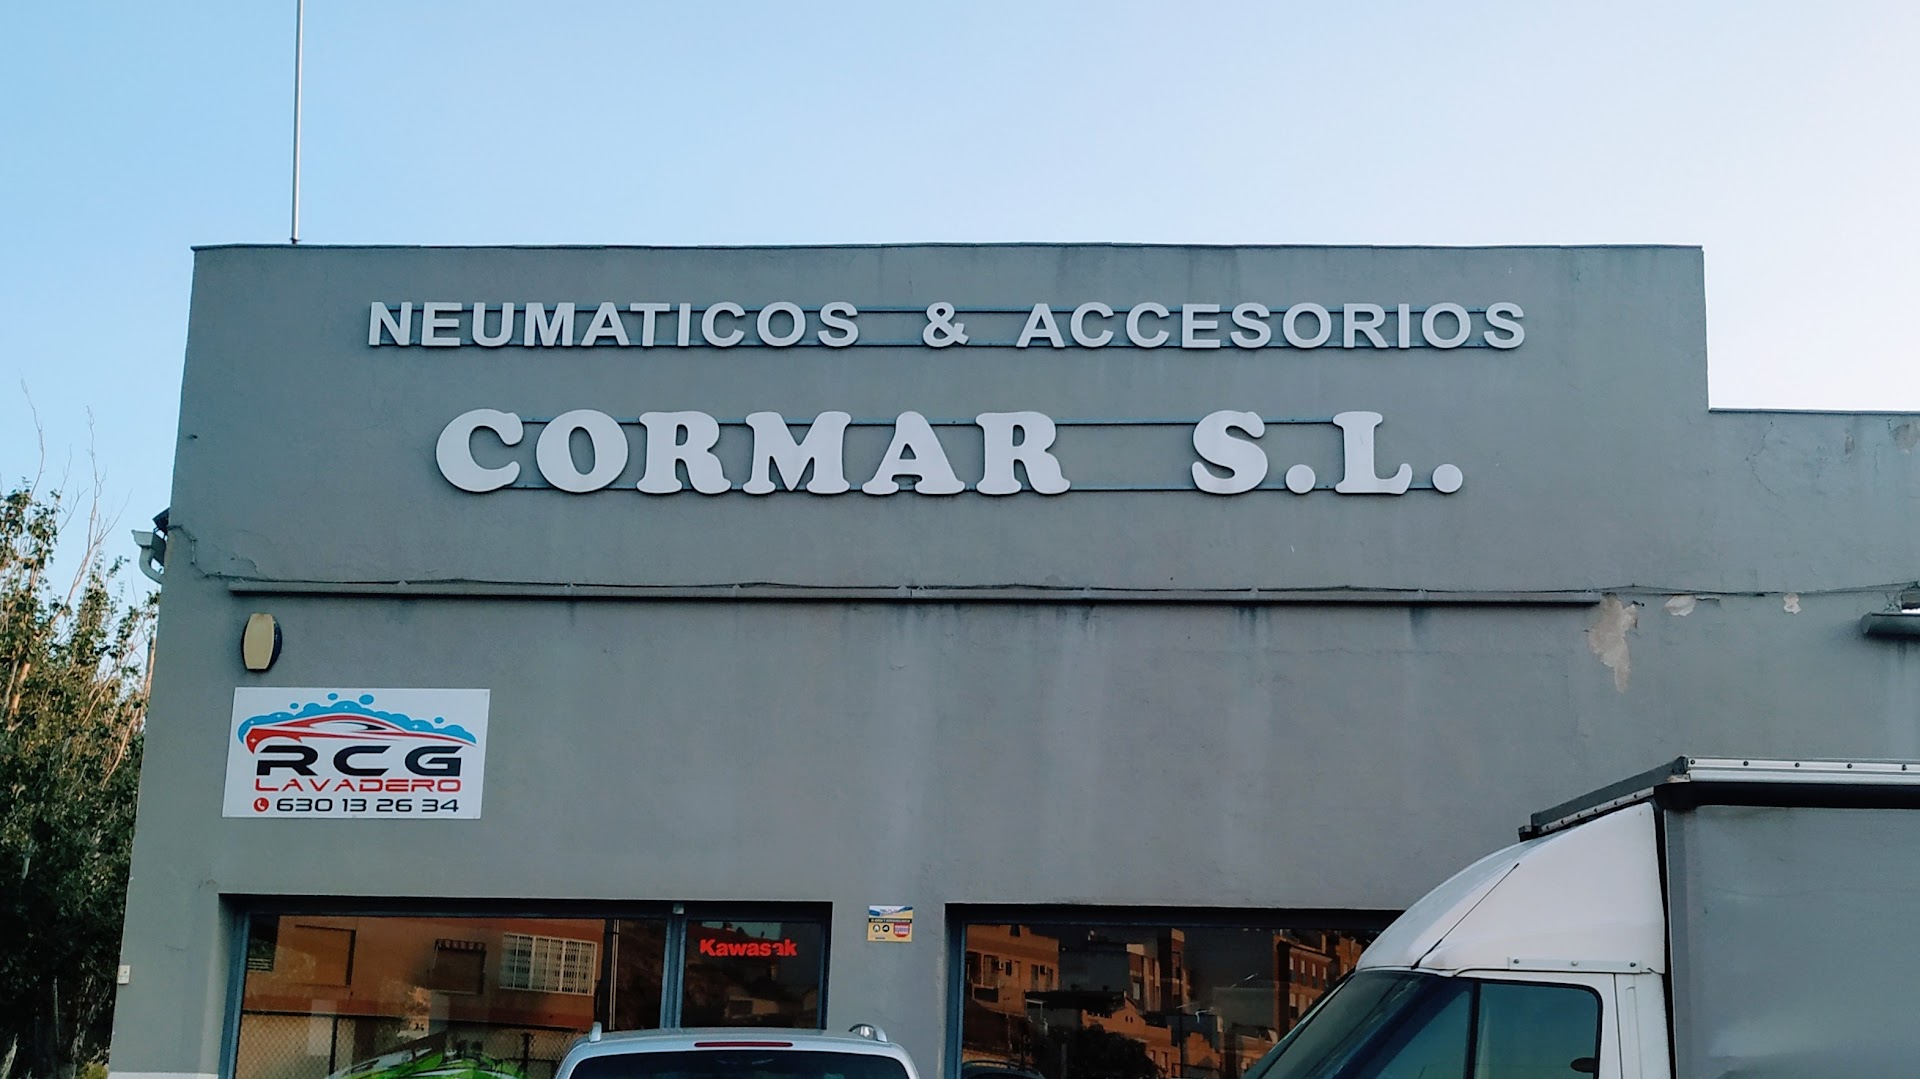 Neumáticos & Accesorios Cormar S.L.